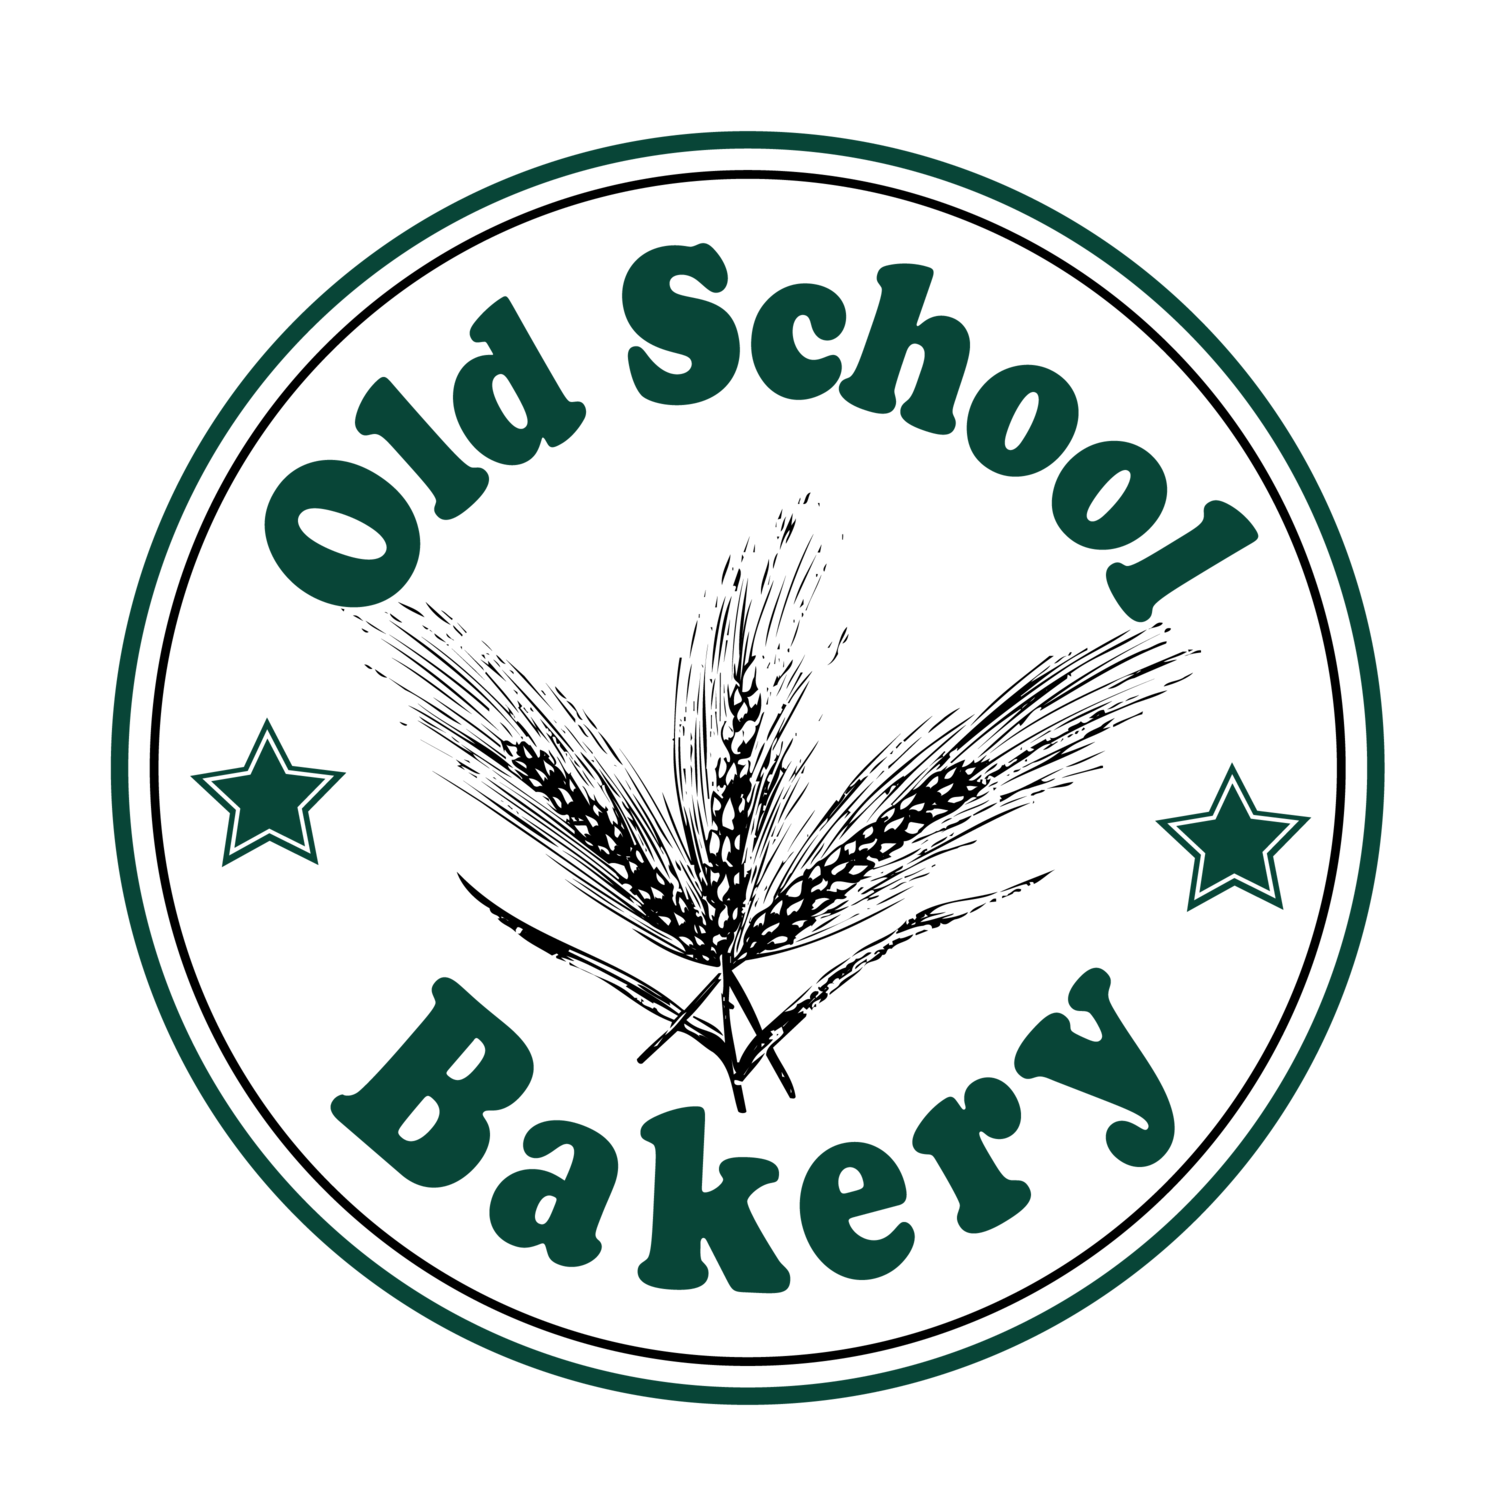 Old School Bakery